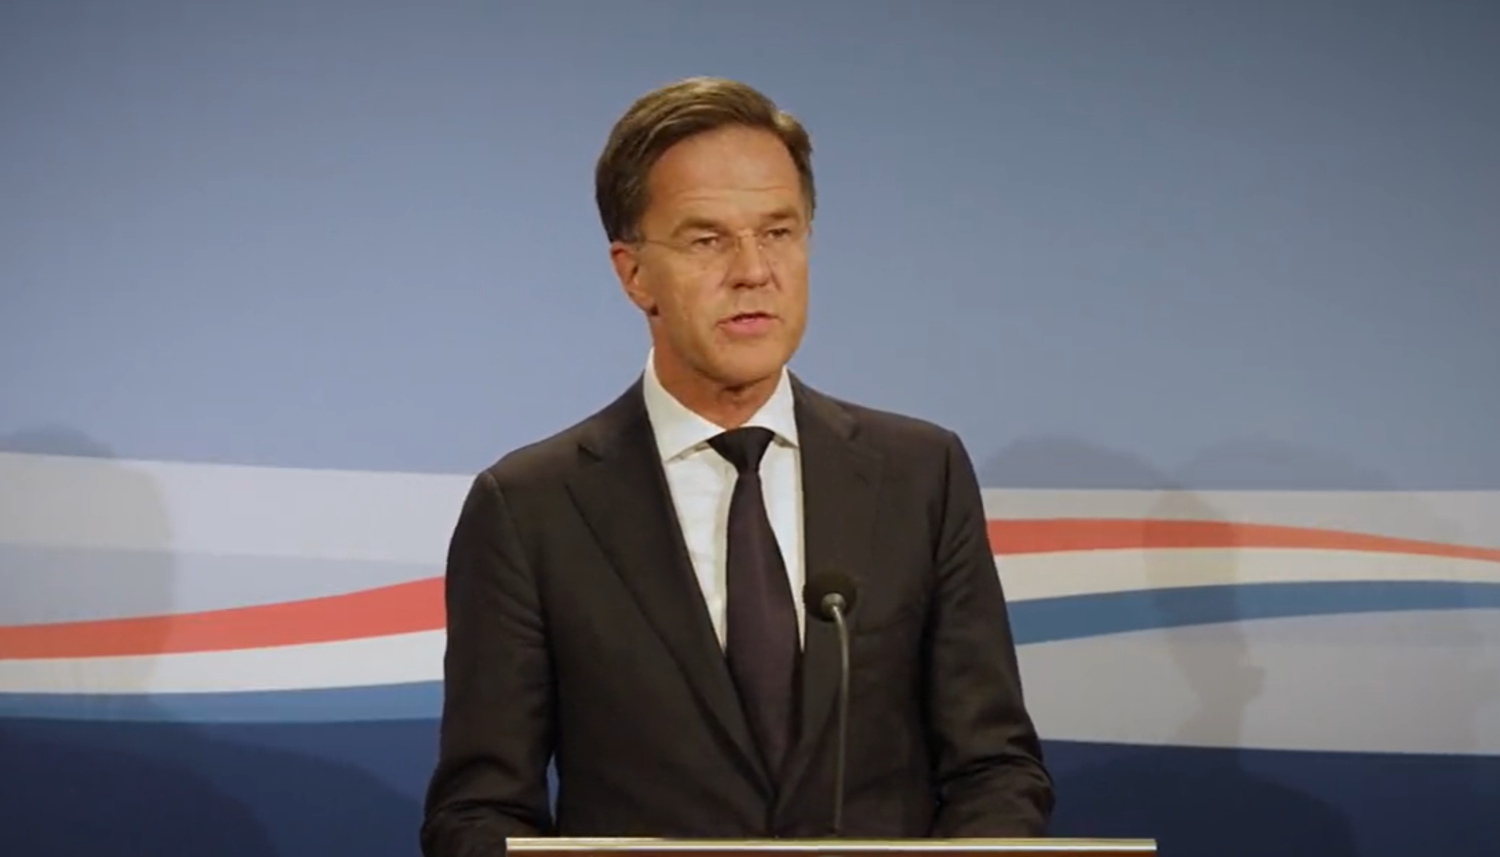 Ολλανδία: Παραίτηση του κυβερνητικού συνασπισμού λόγω διαφωνιών στην υποδοχή προσφύγων